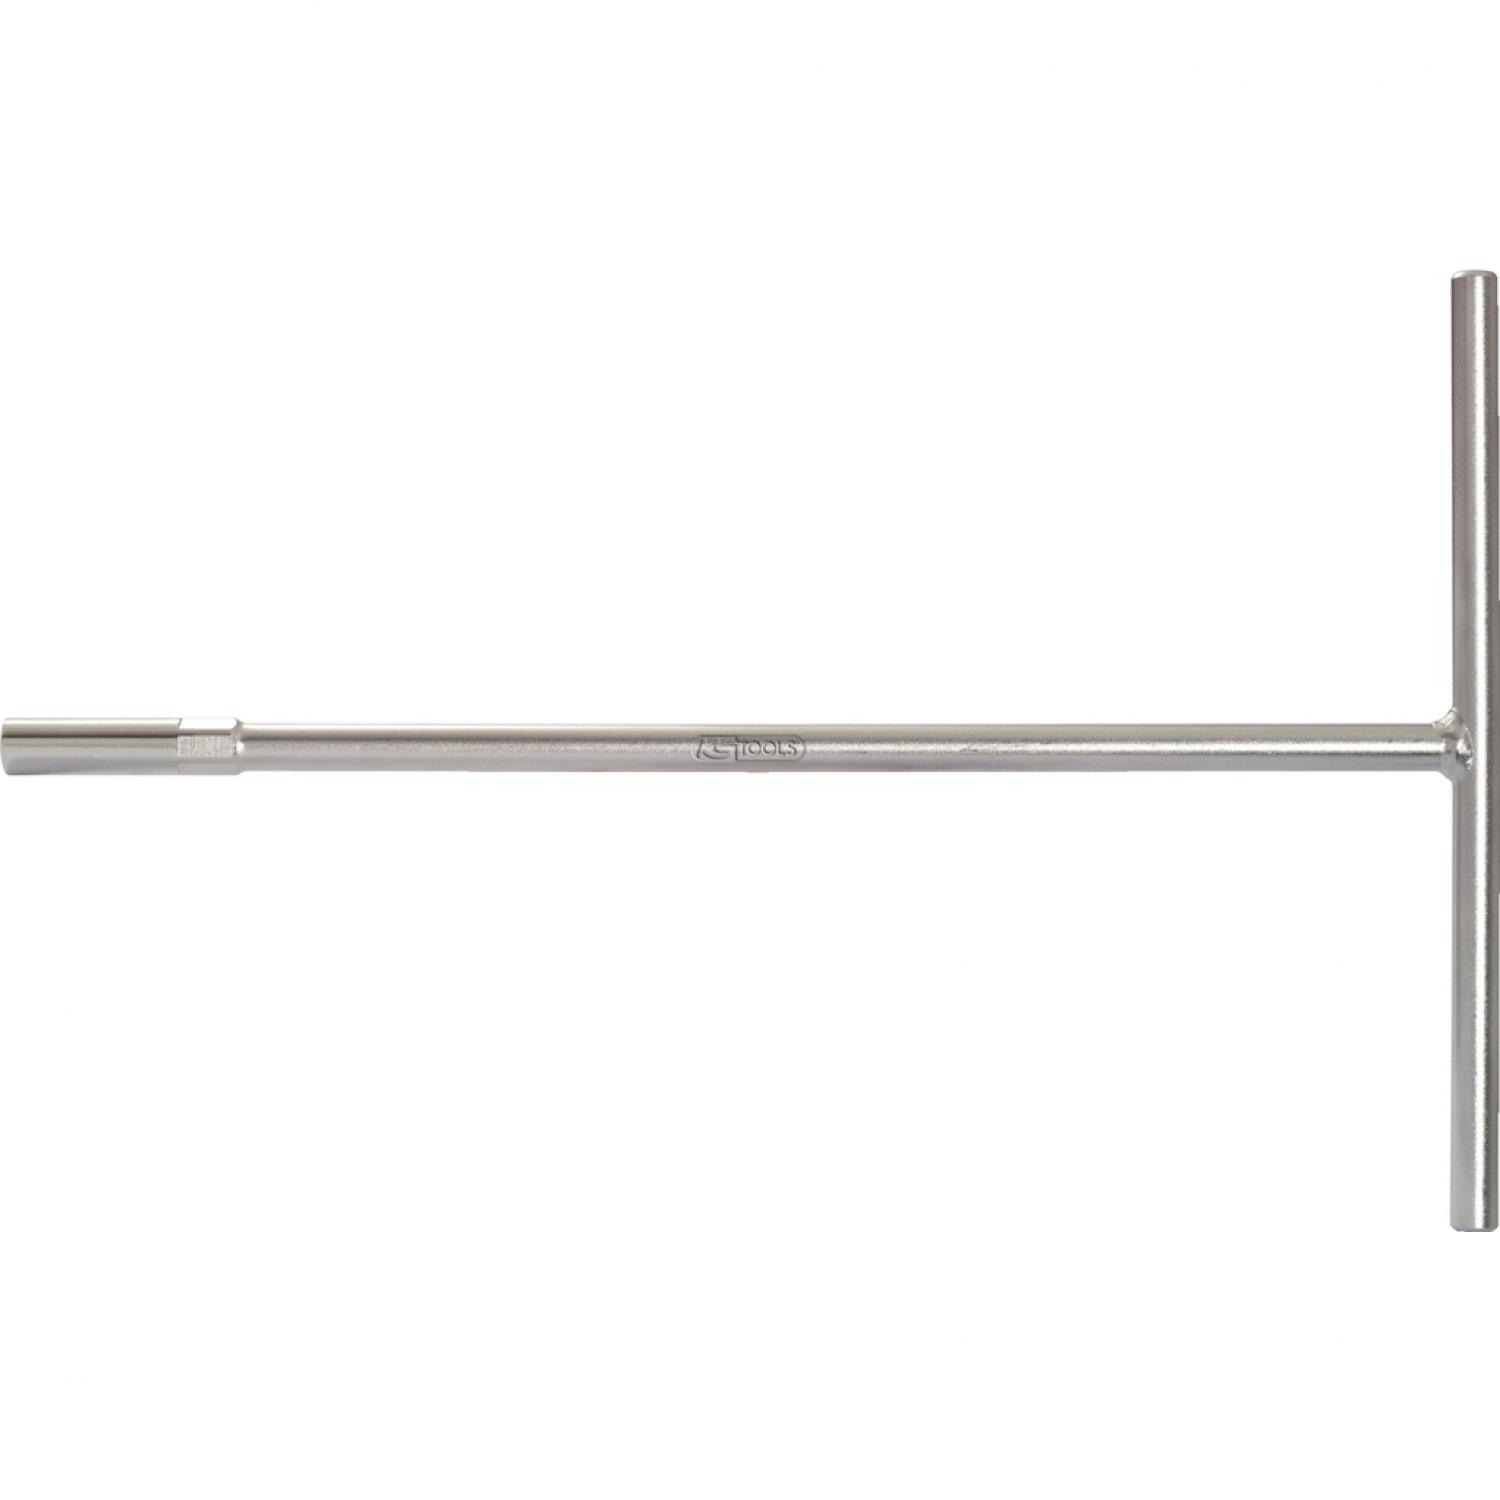 Торцовый ключ с Т-образной рукояткой, 300 мм, 11 мм